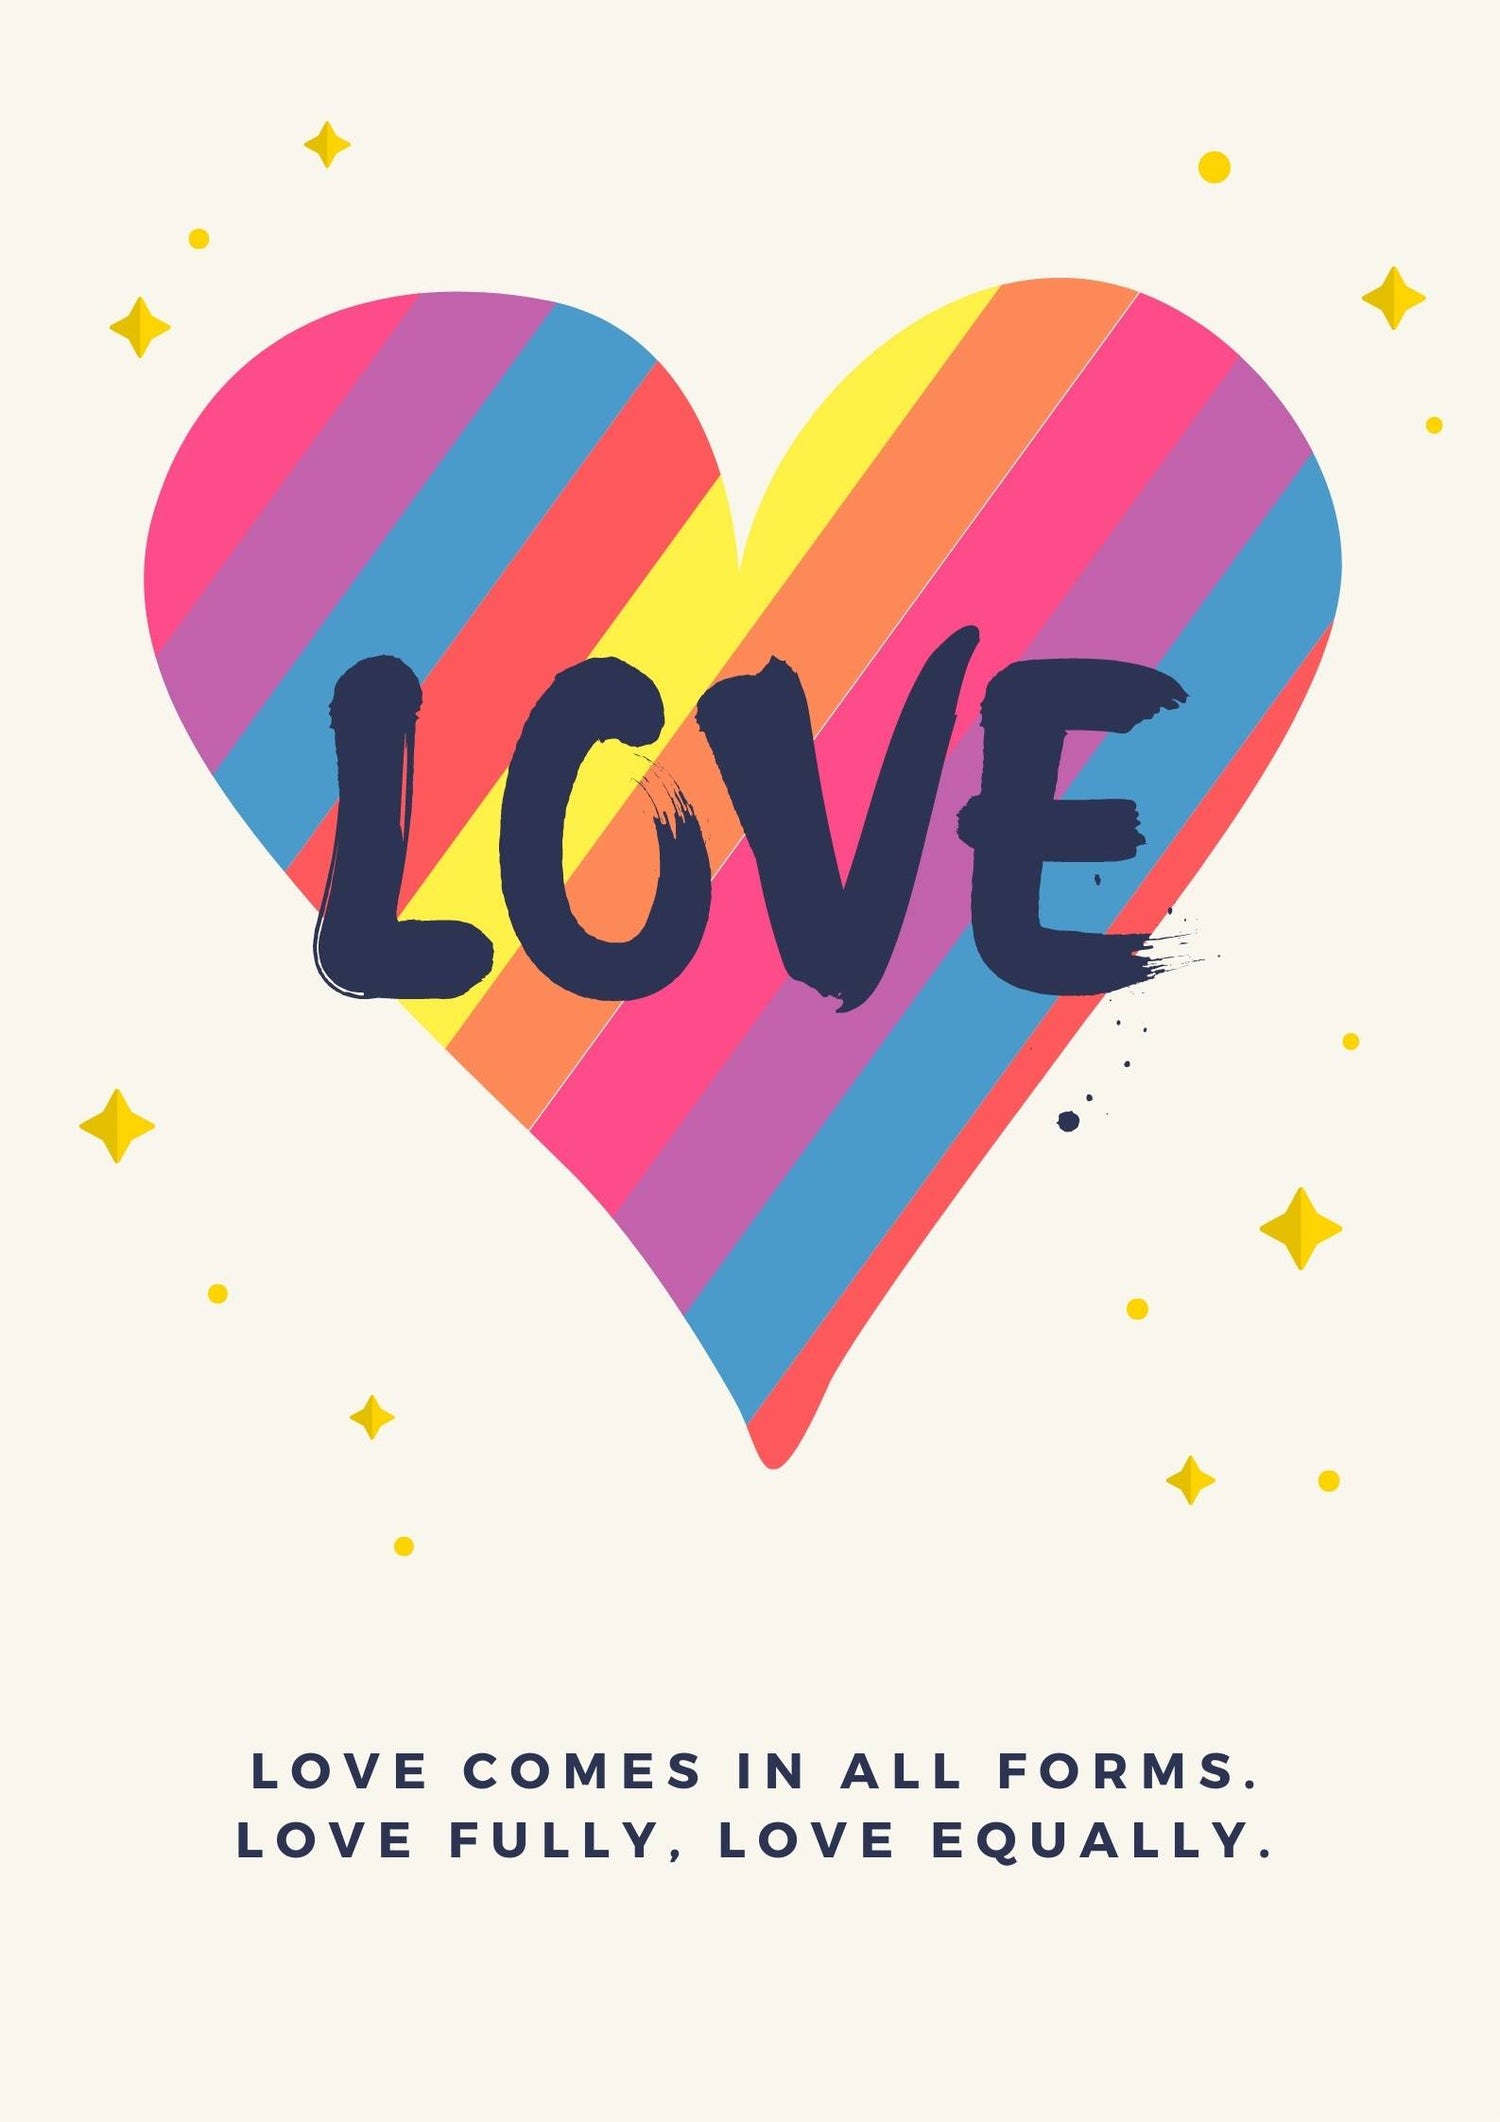 Love is Love (LGBTQ)